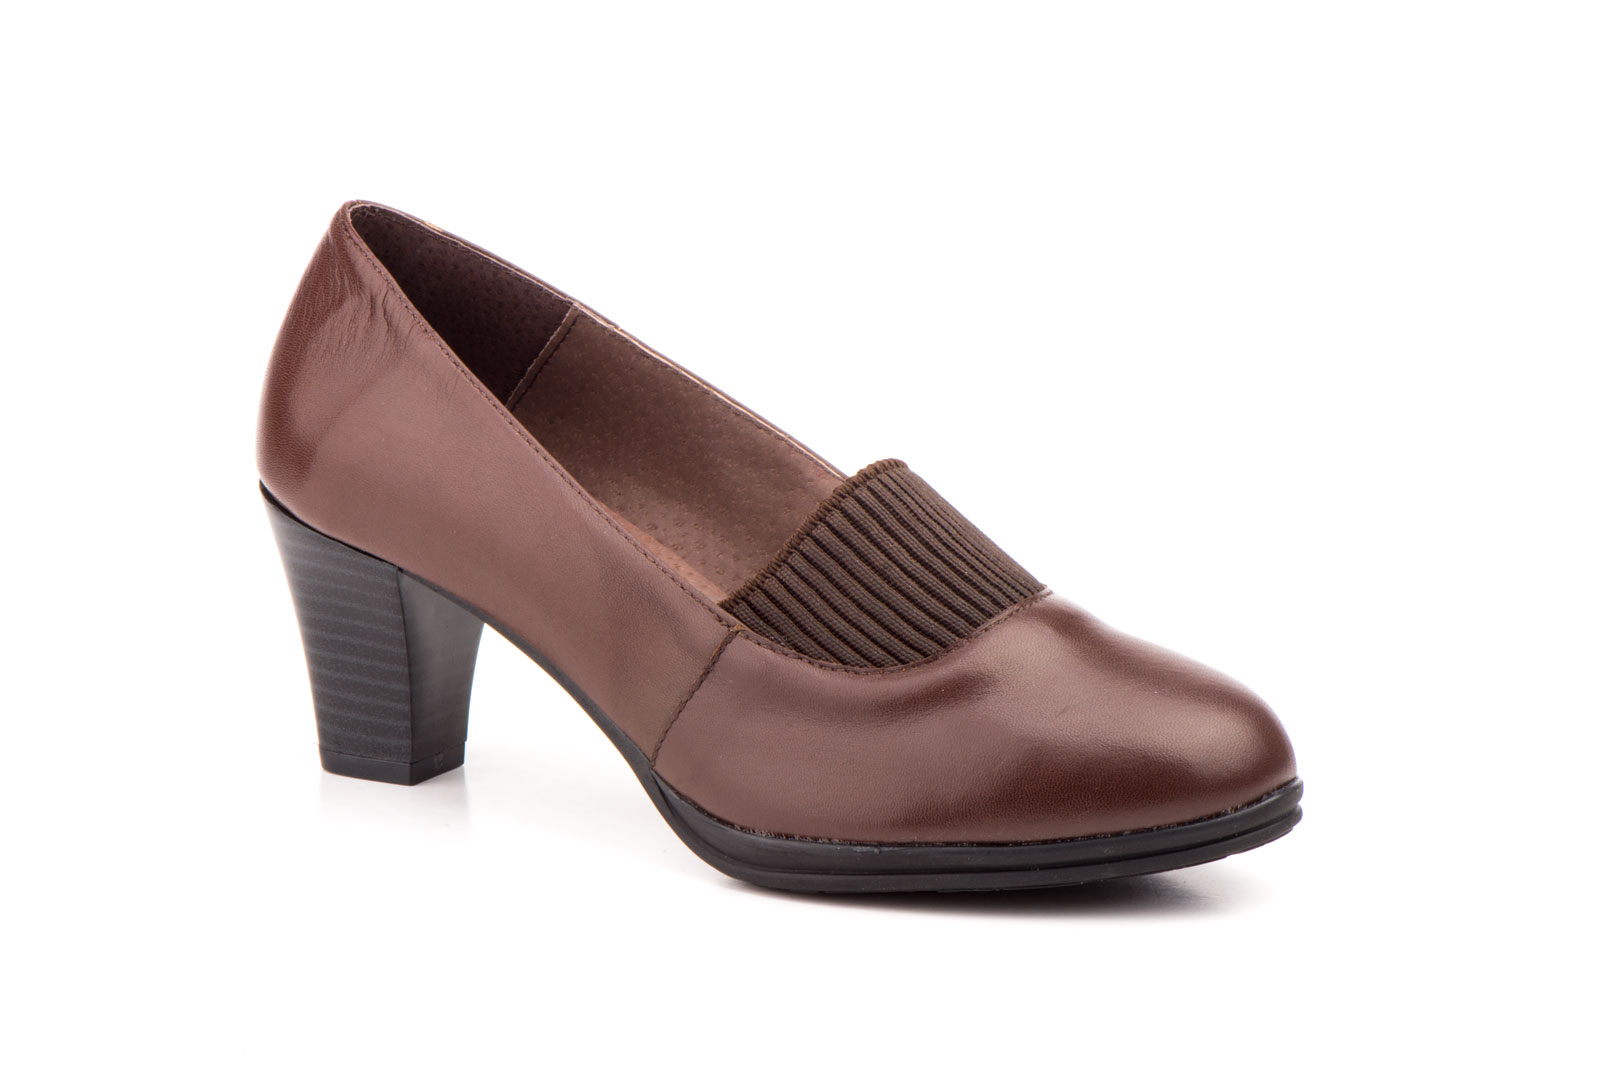 Zapatos Mujer Piel Marrón Elastico  -  Ref. 4008 Marrón